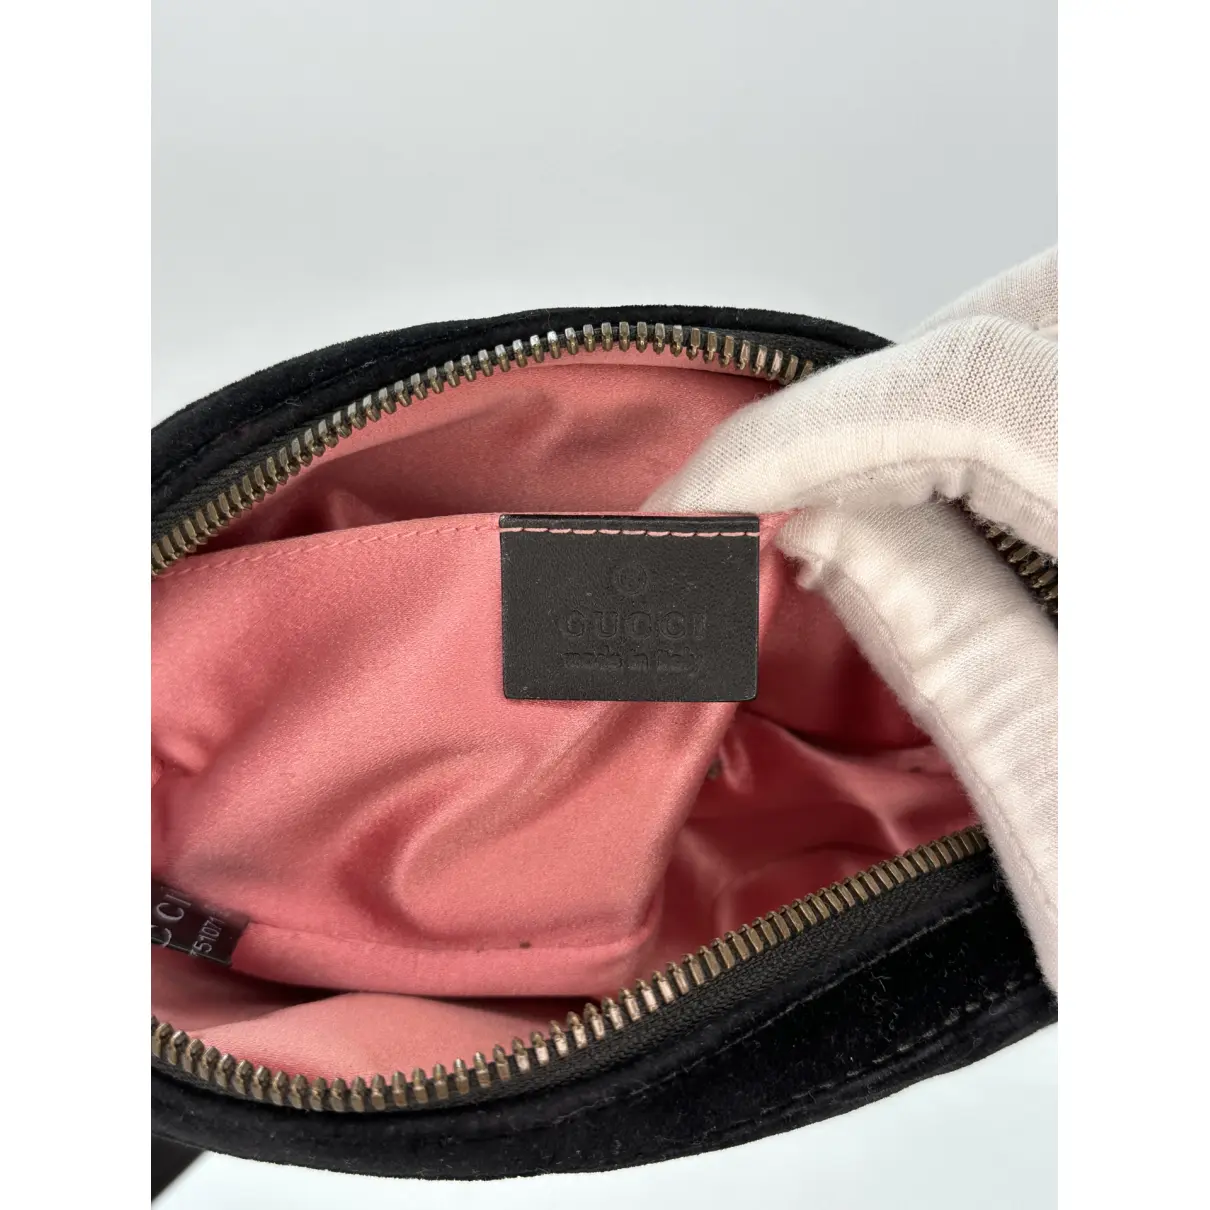 Buy Gucci GG Marmont Oval velvet handbag online